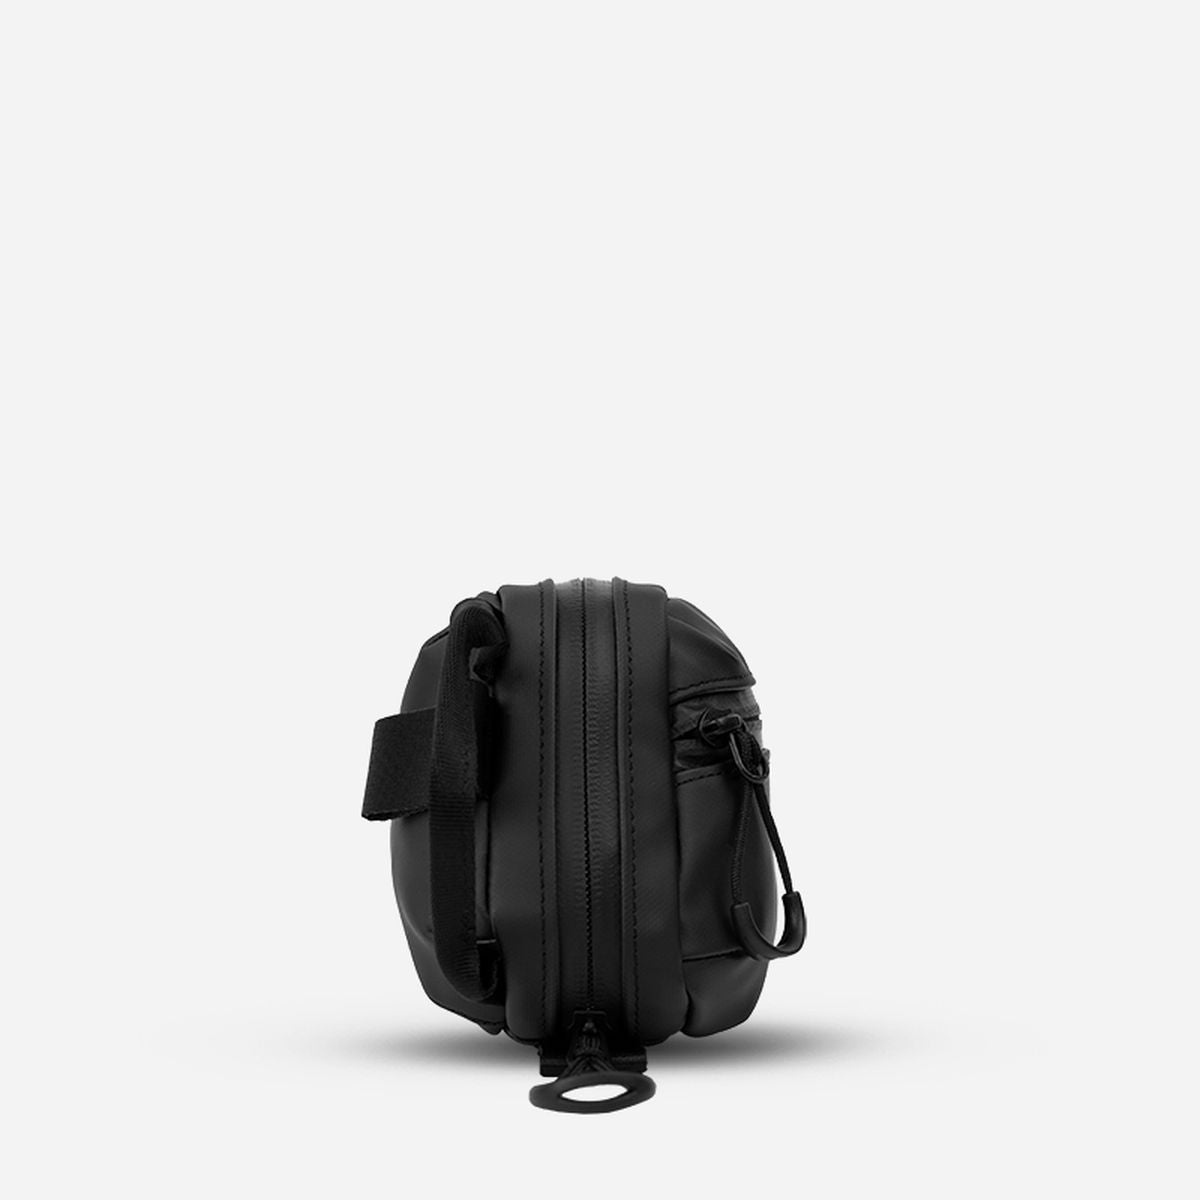 Wandrd Tech Bag Medium - Black 2.0